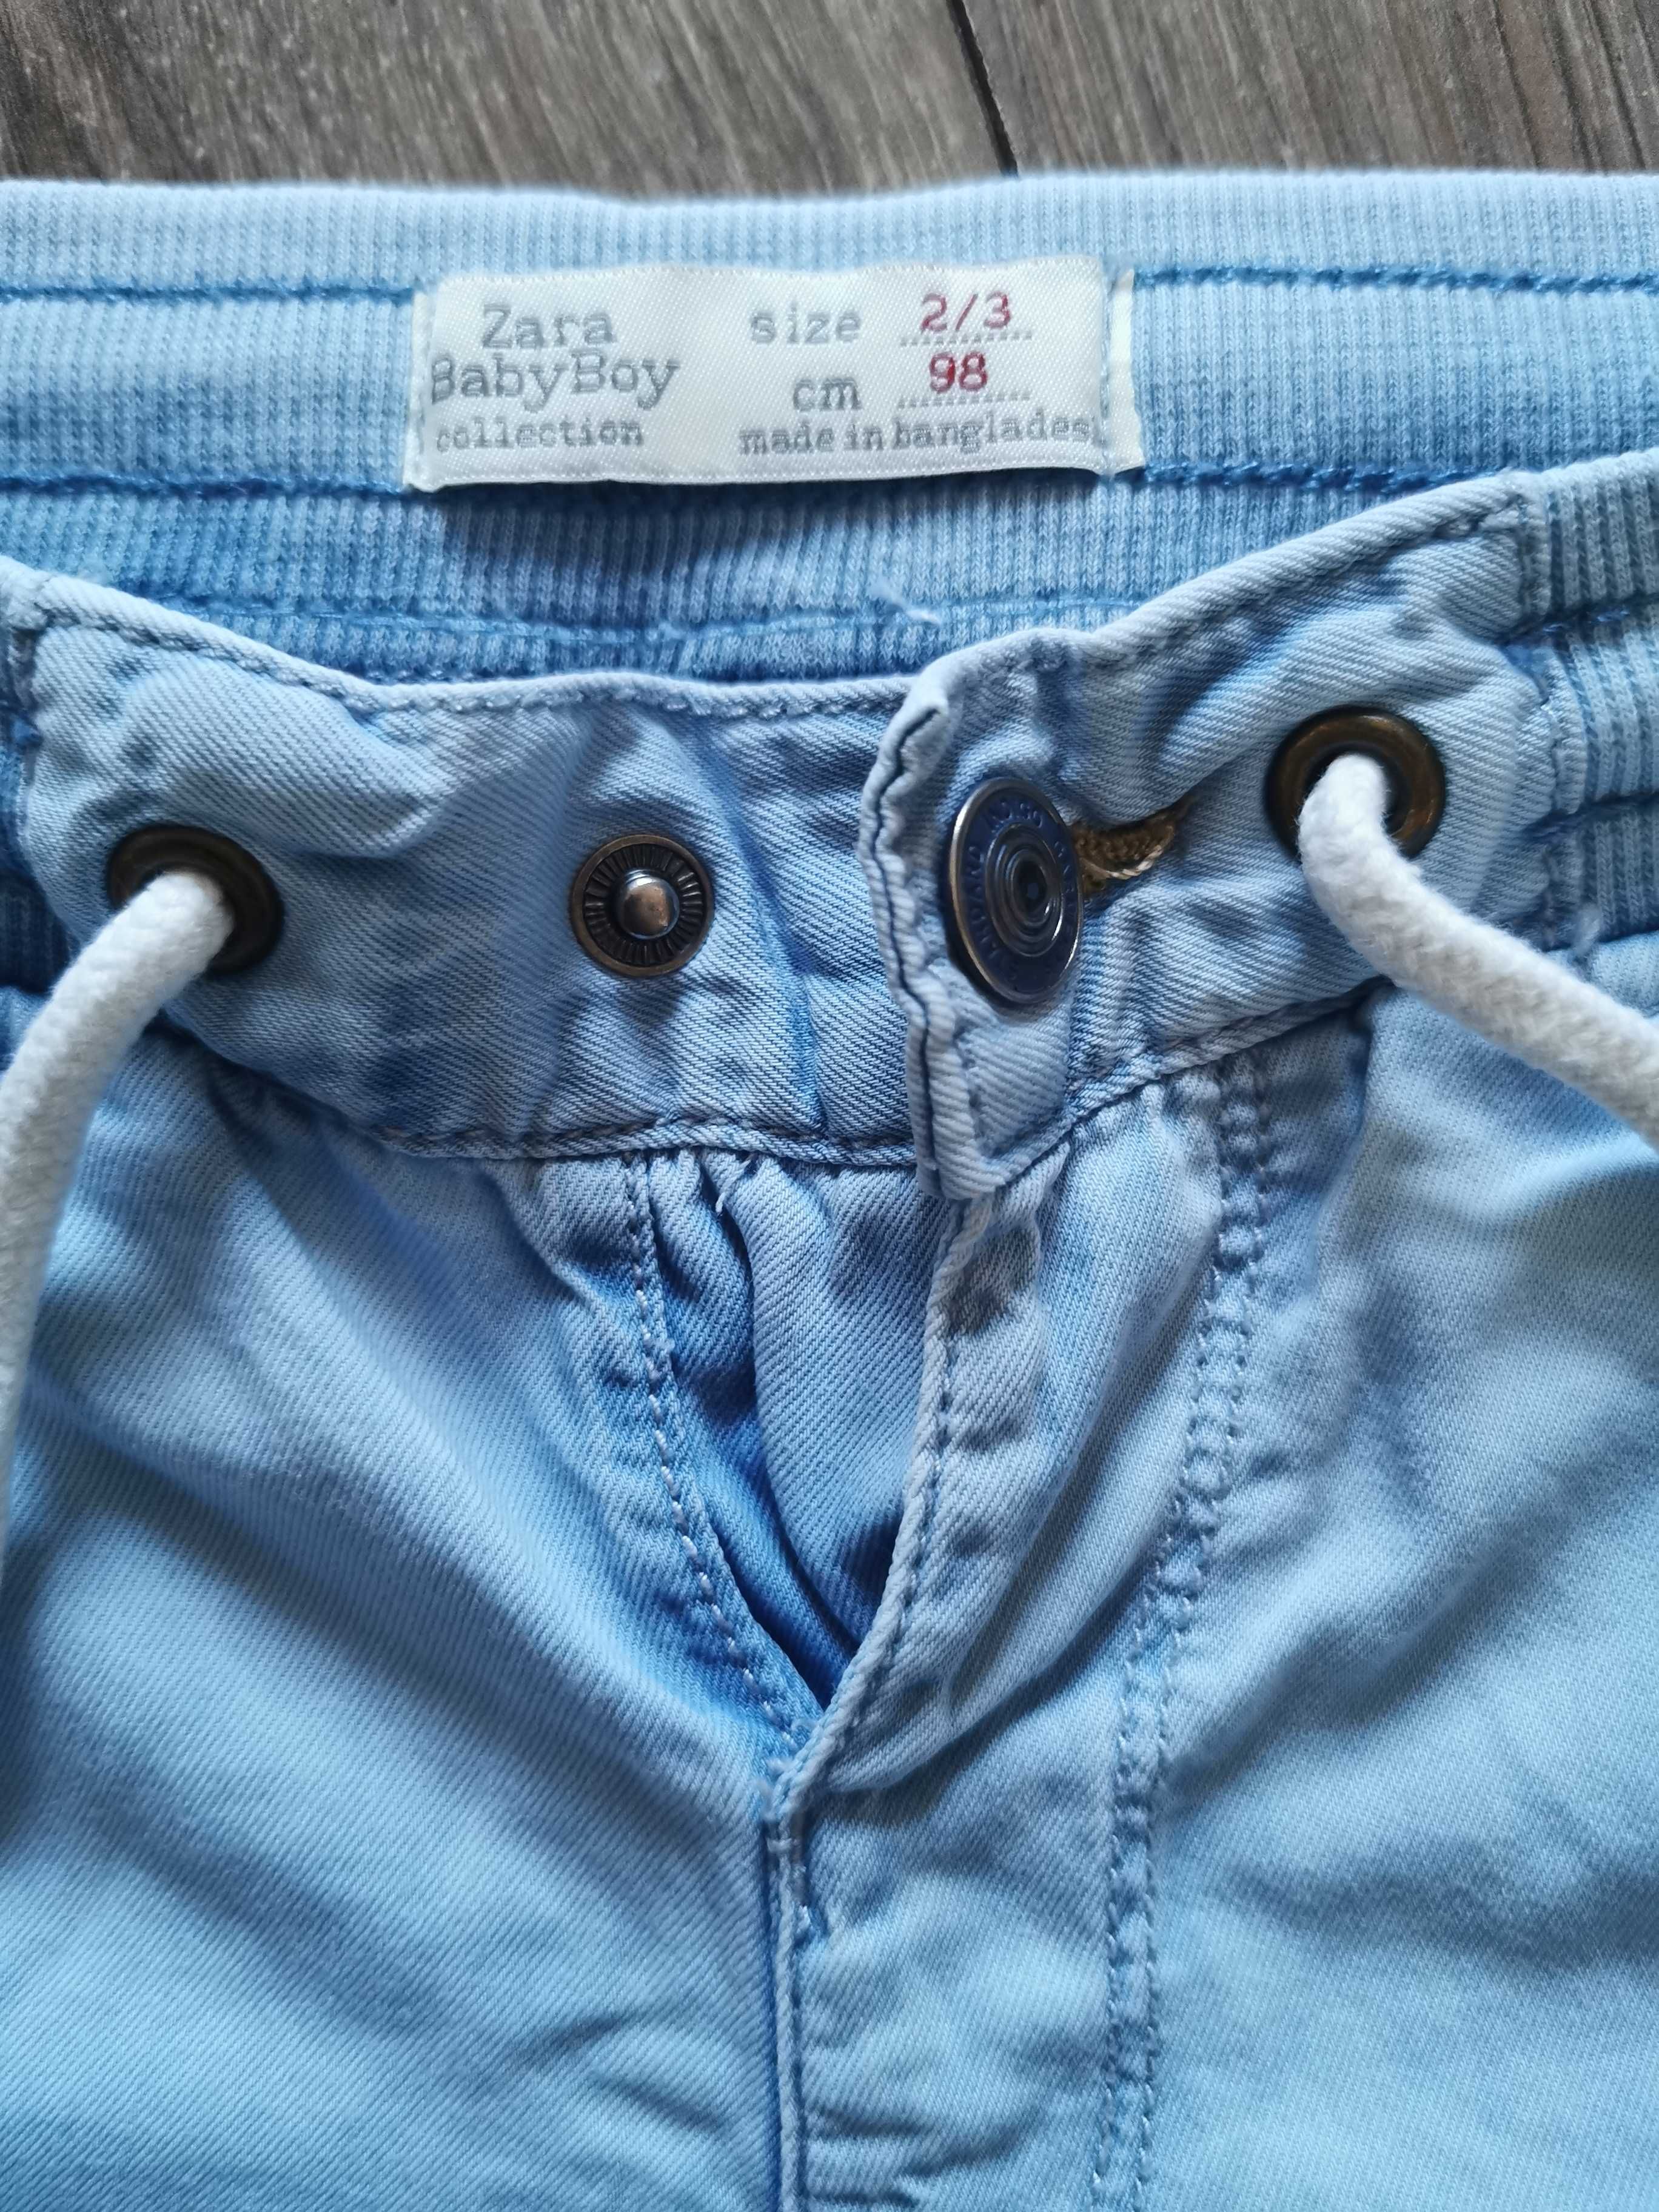 Zestaw spodni Zara Baby 98